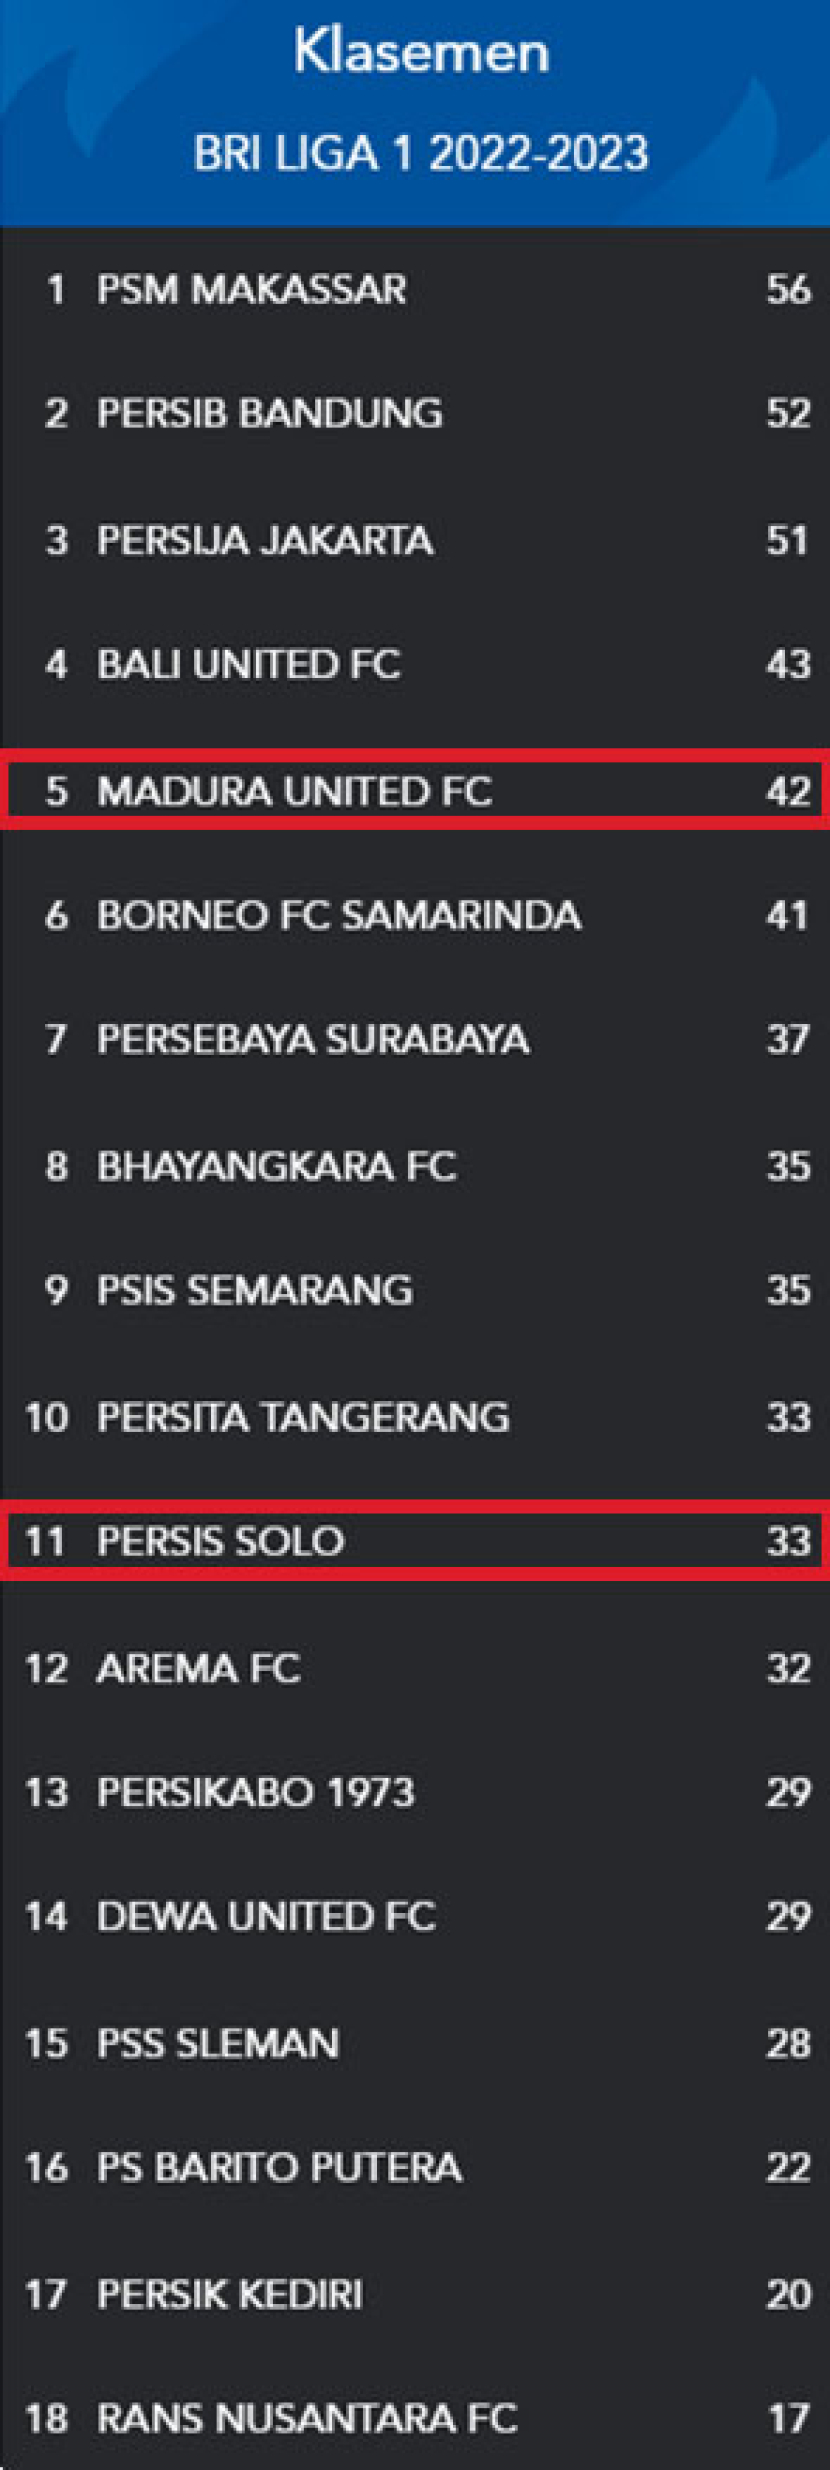 Klasemen BRI Liga 1, 27 Februari 2023. Sumber: Liga Indonesia Baru.